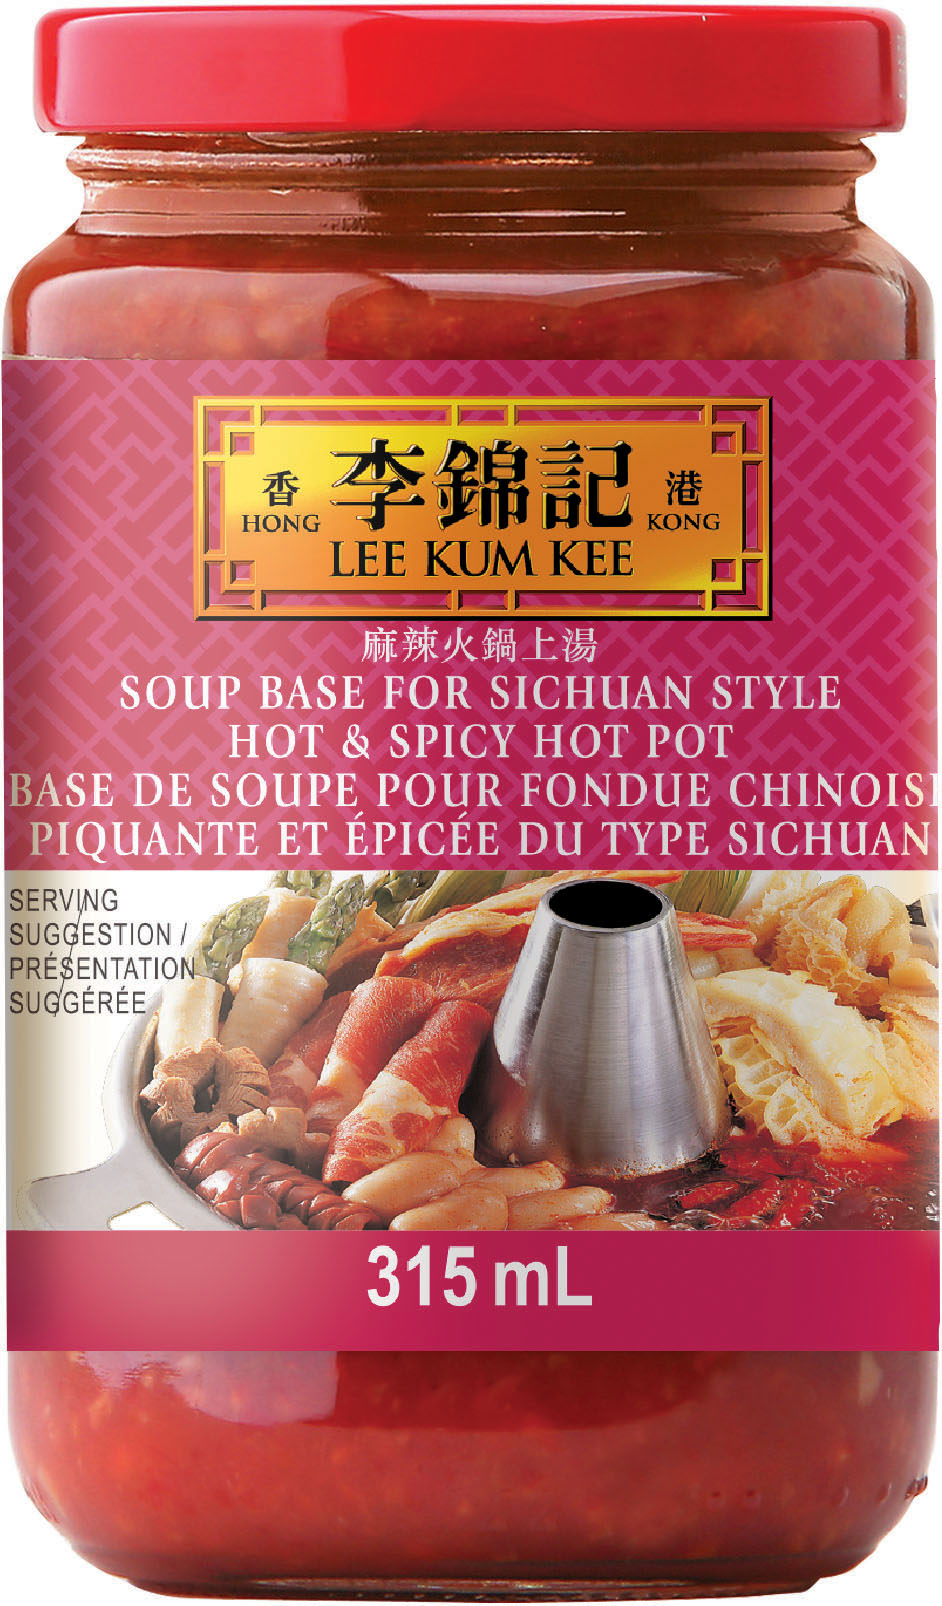 Base de soupe pour fondue chinoise piquante et épicée du type sichuan 315 mL, bocal